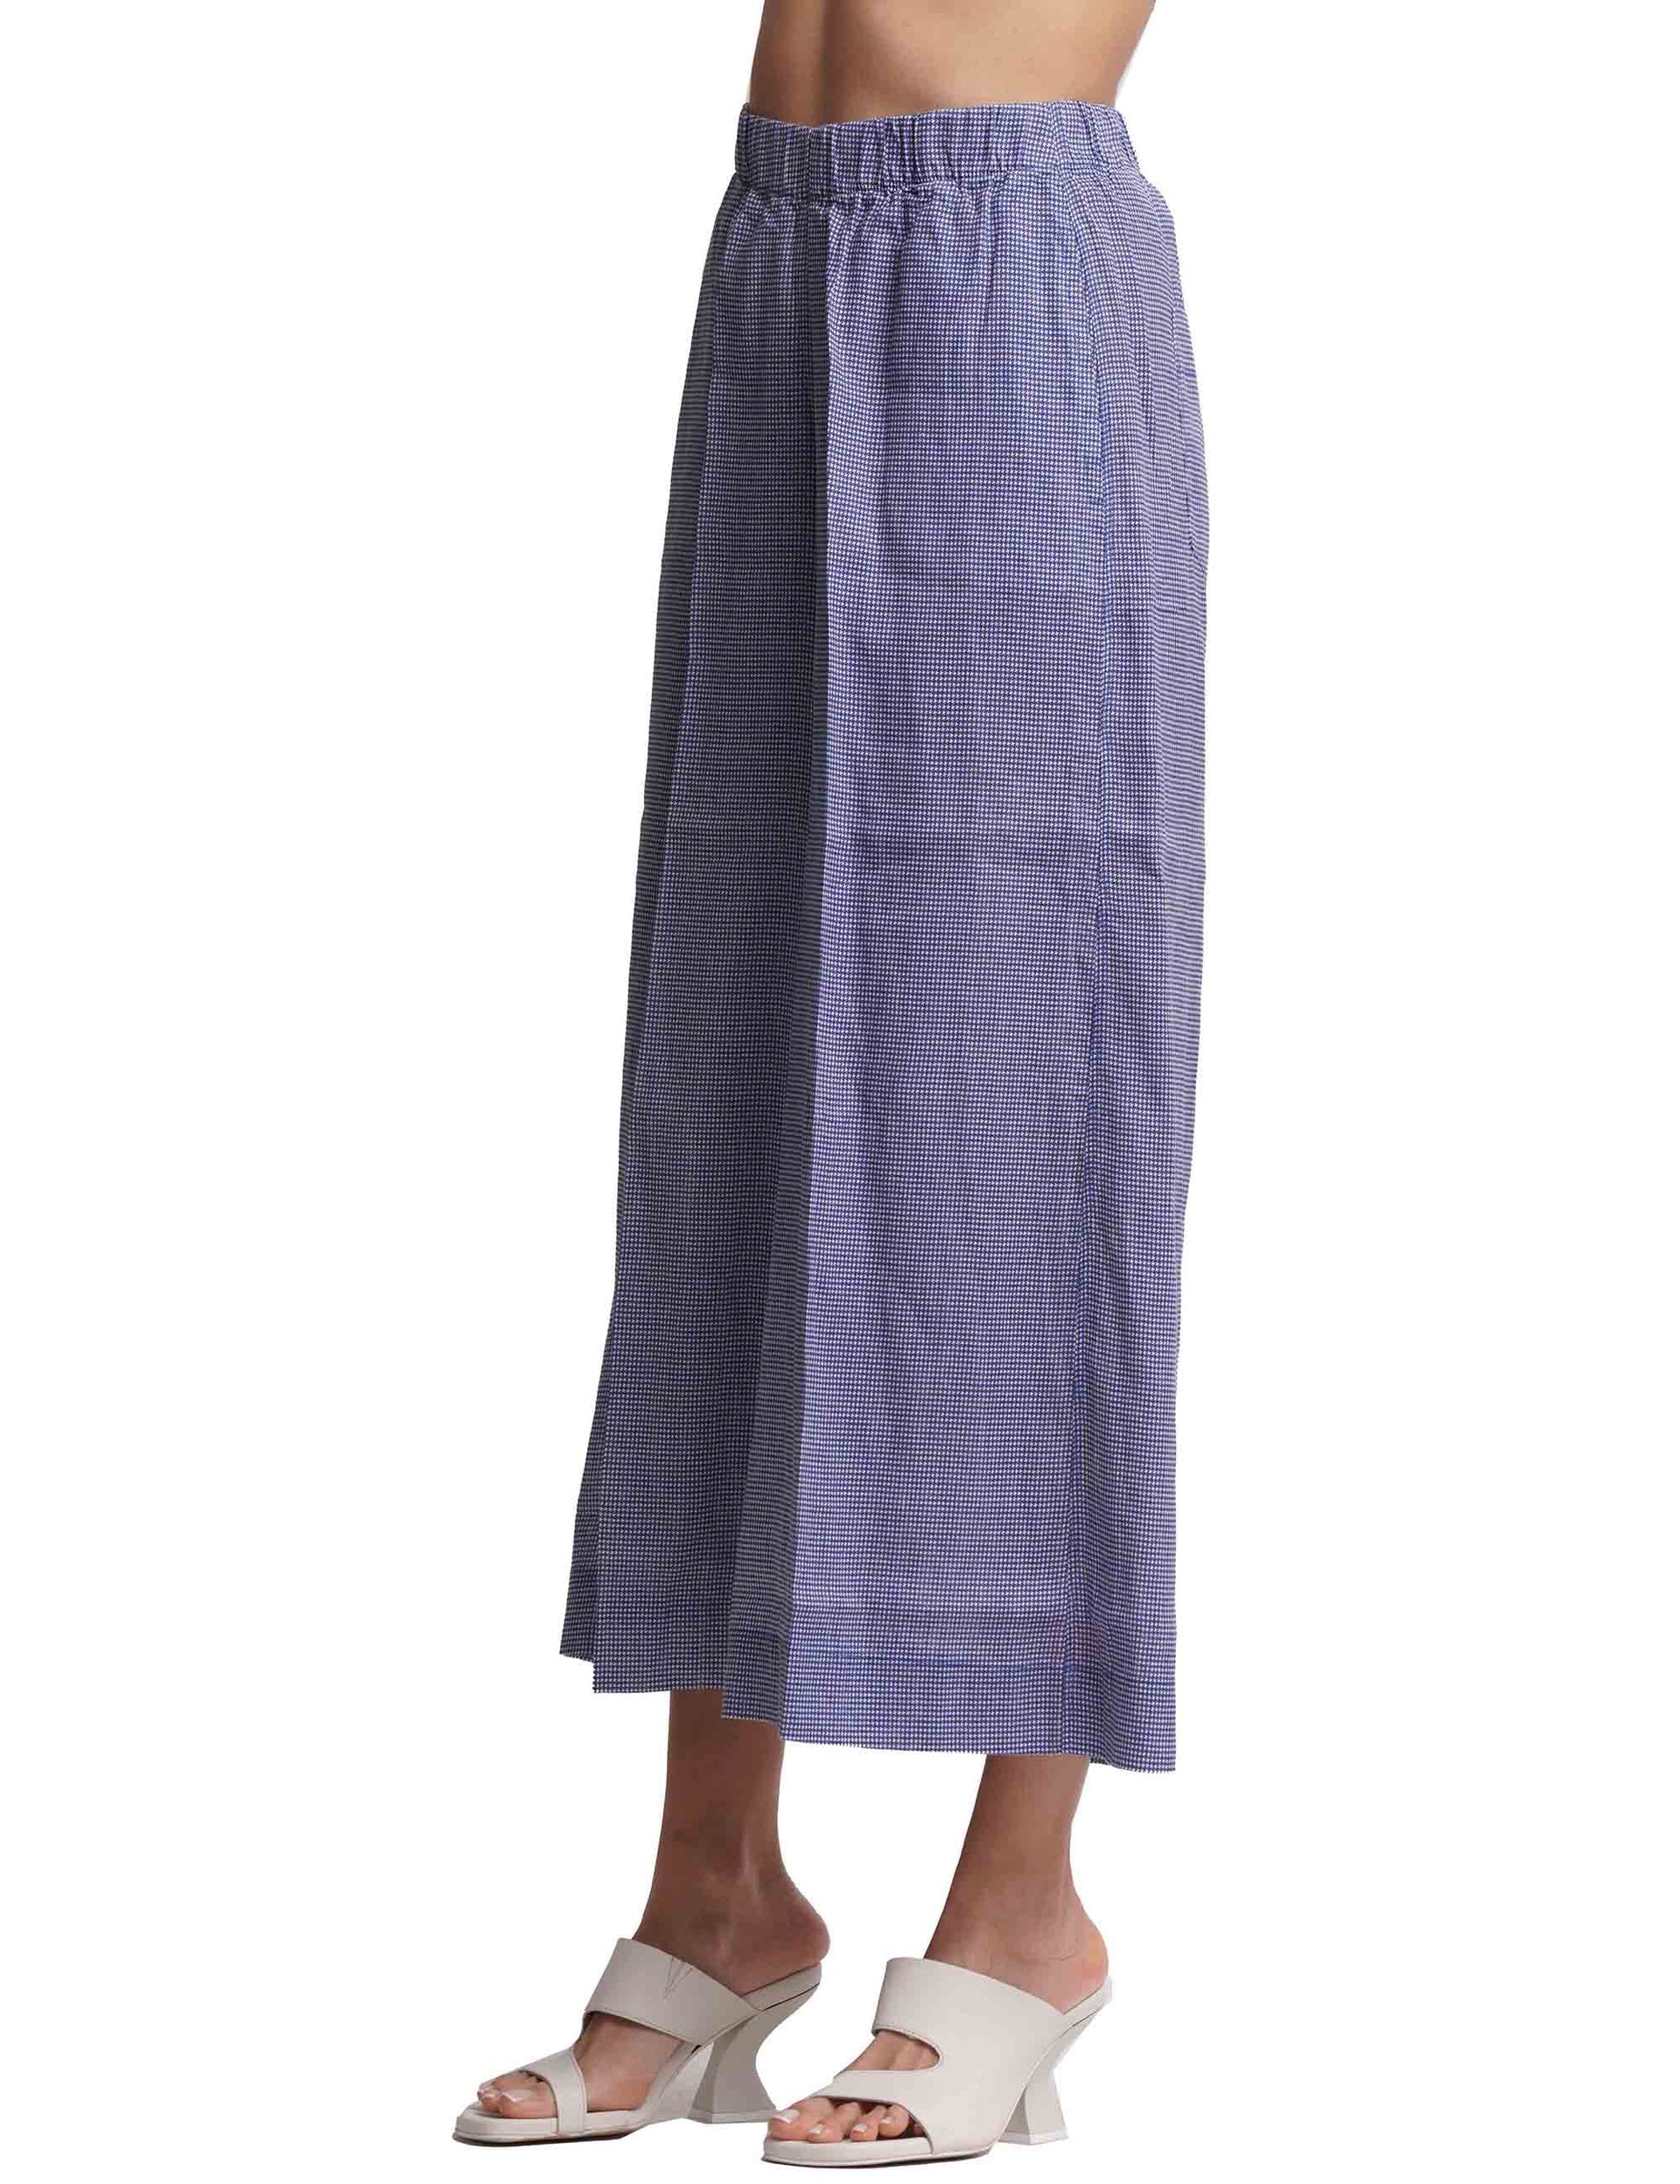 Pantaloni donna in puro lino blu a gamba larga con elastico in vita